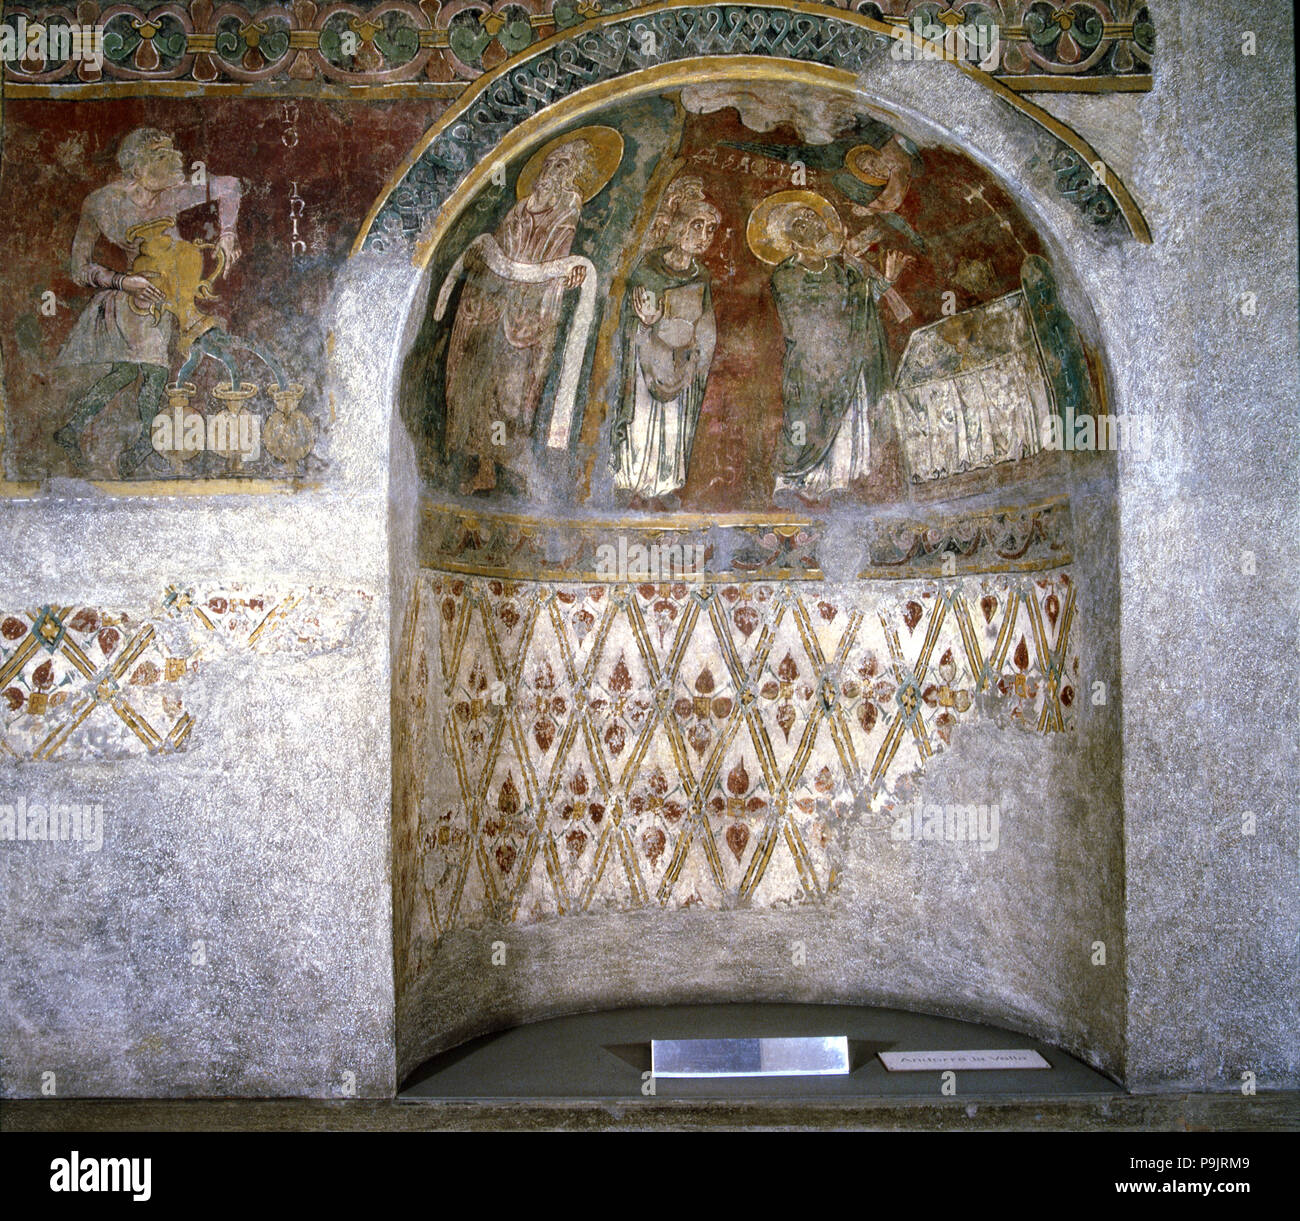 Detalle de pinturas murales en el Arcipreste de la iglesia de Sant Esteve (Andorra la Vella). Foto de stock